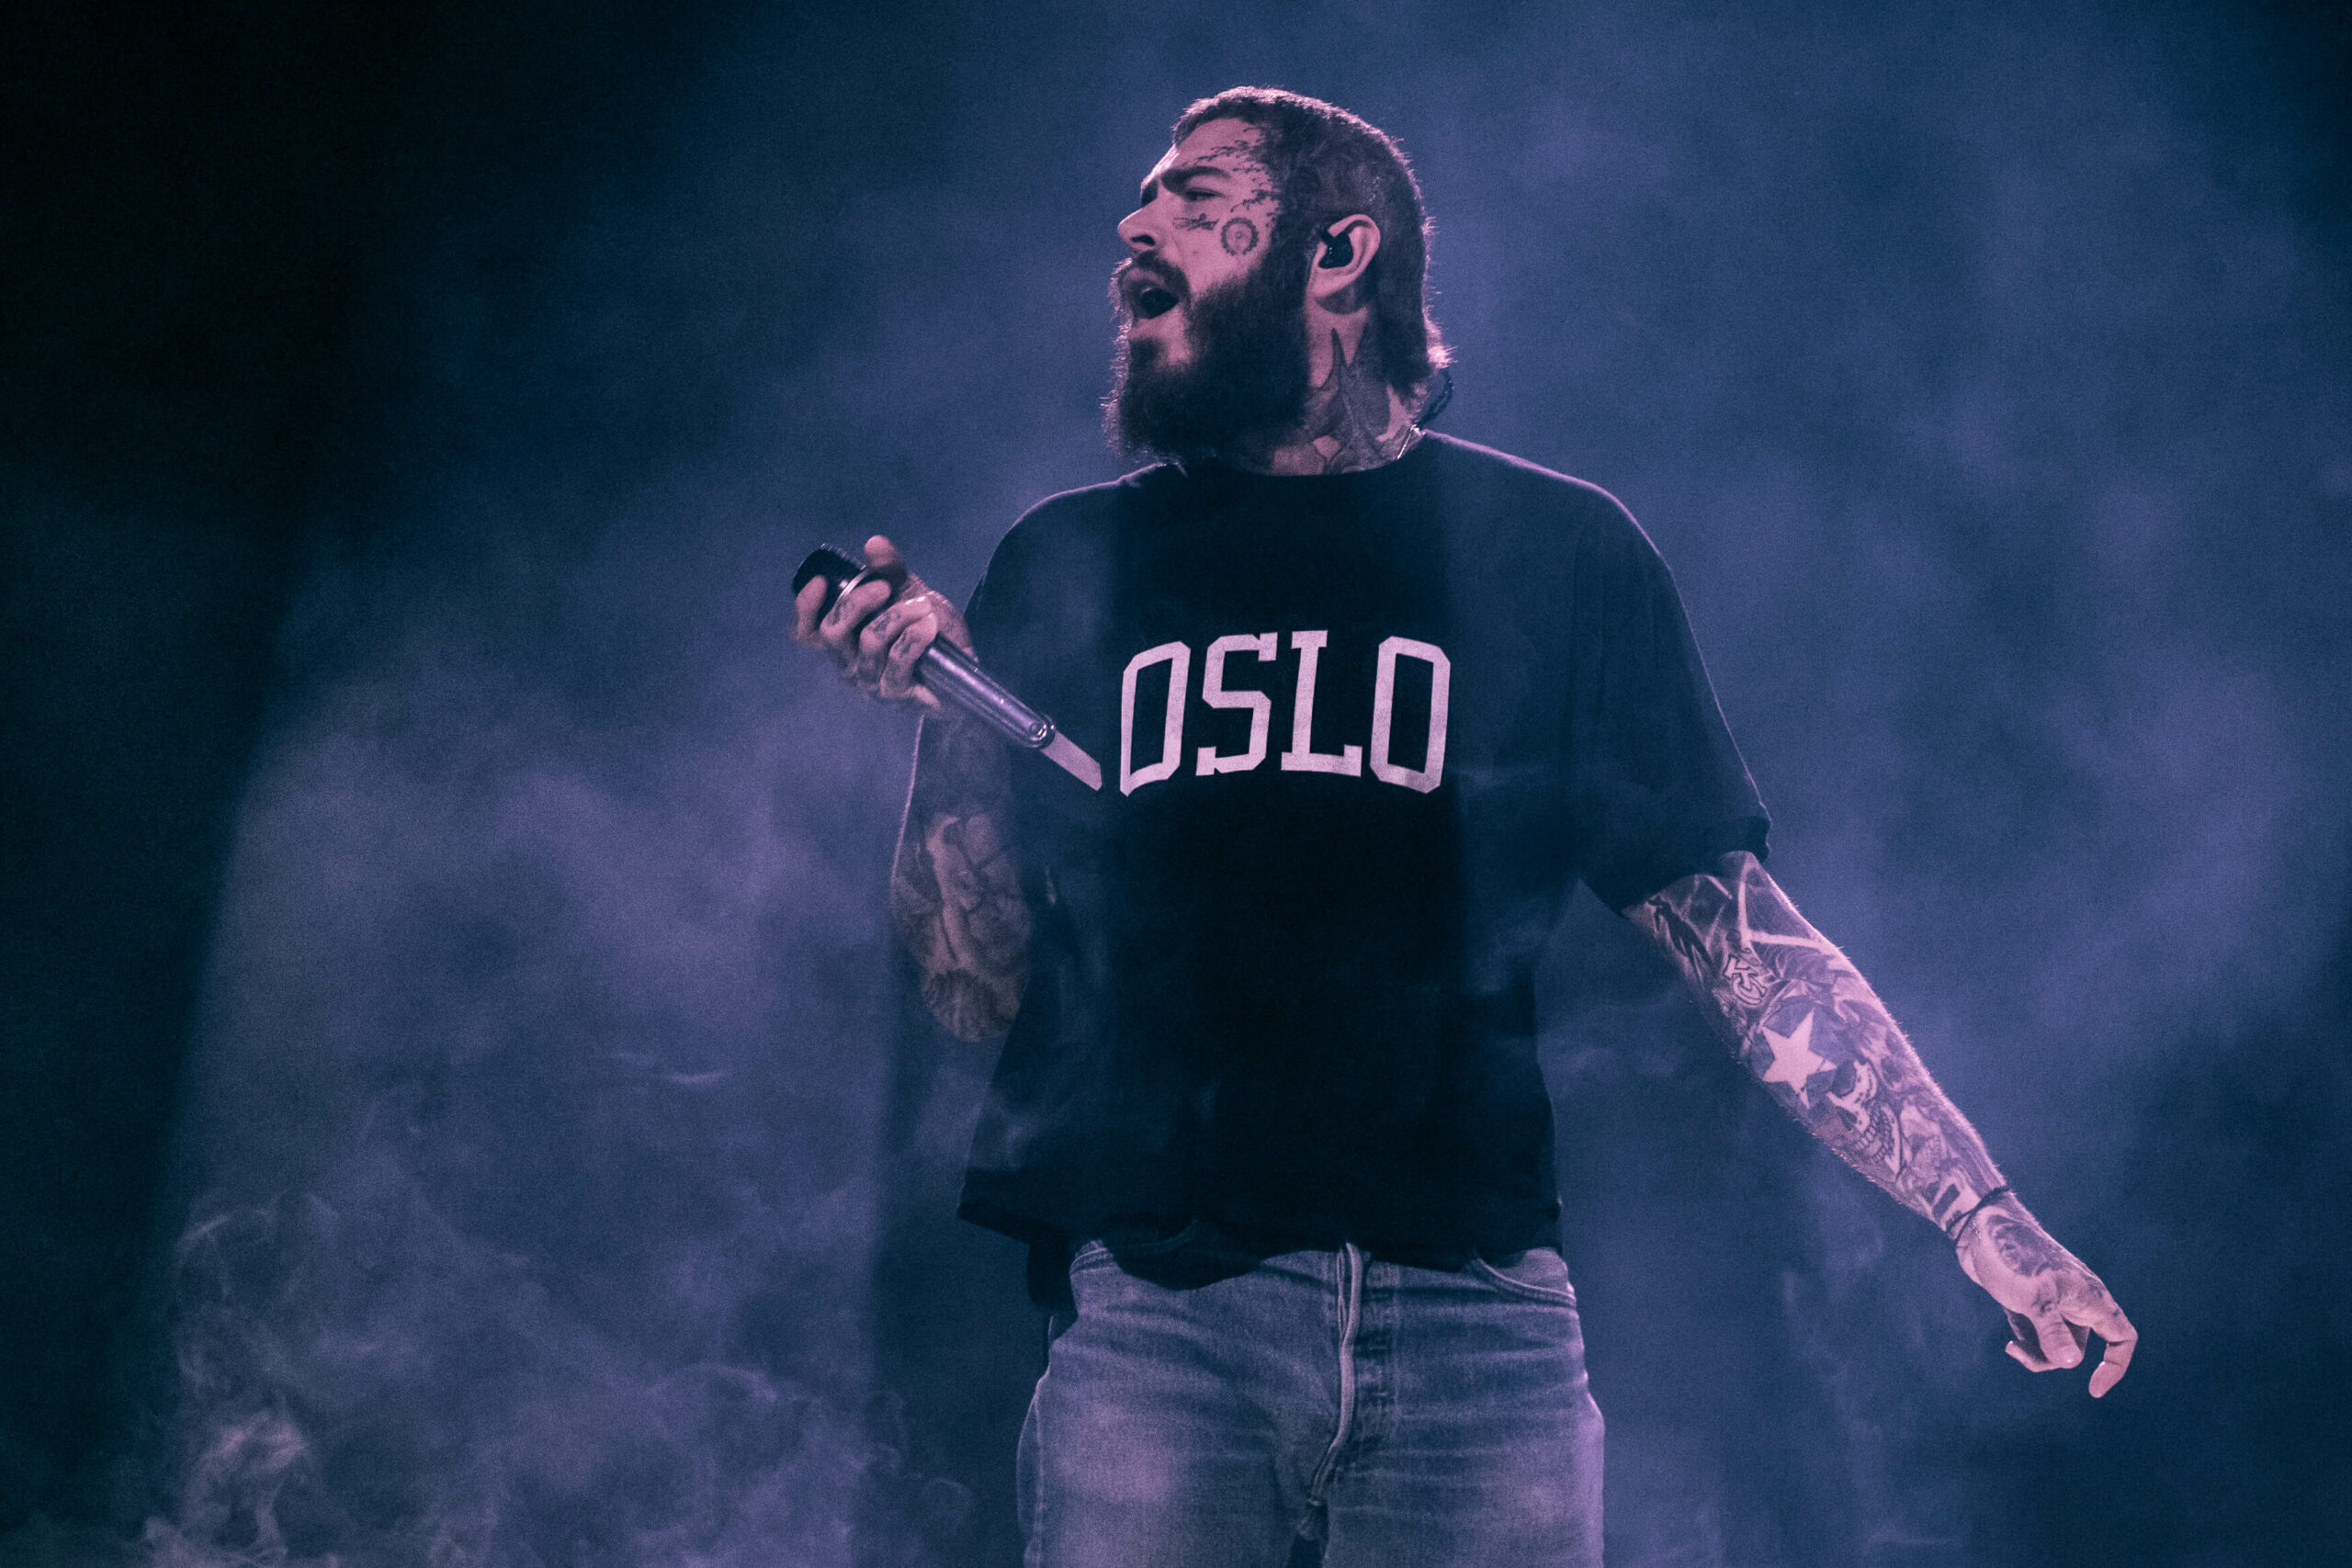 Post Malone har mange tatoveringer og har på seg en svart t-skjorte hvor det står Oslo. Her holder han mikrofonen mot publikum.